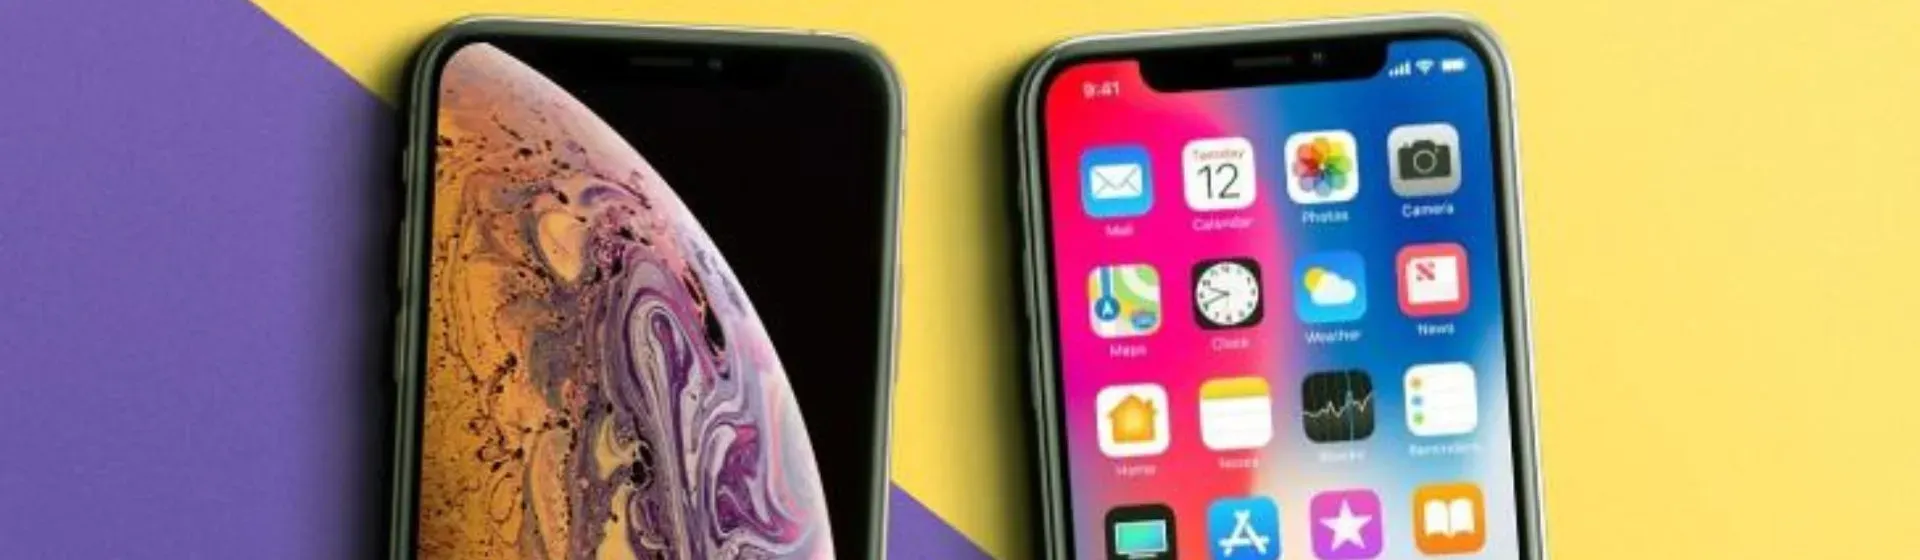 Capa do post: iPhone XS vs iPhone X: veja 6 diferenças entre os celulares